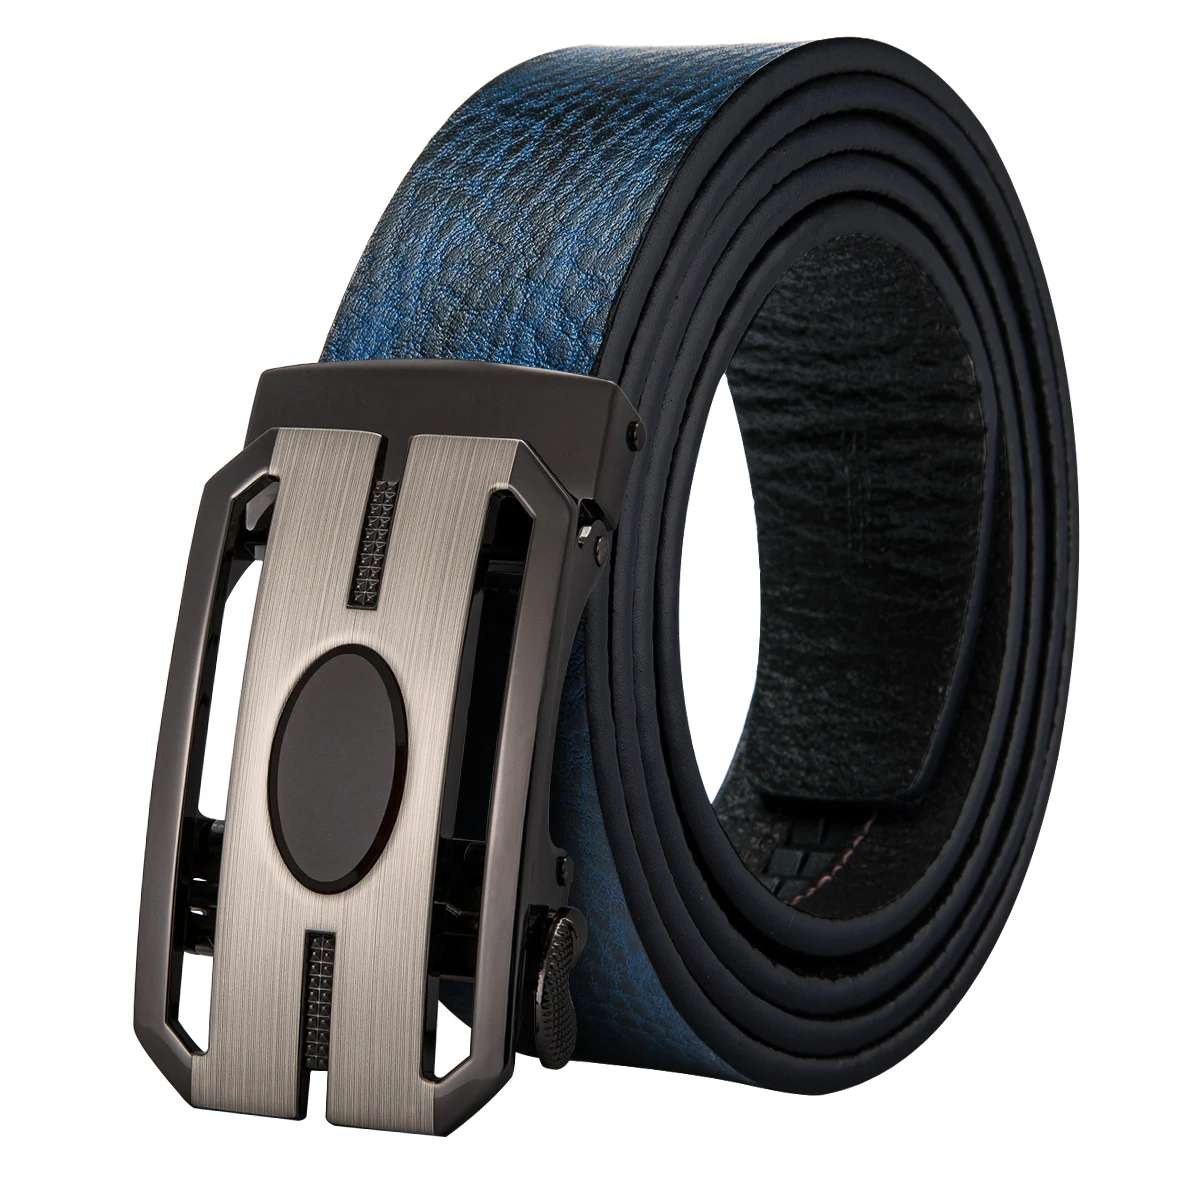 0 : Buy Hi Tie Mens Designer Leather Belts for Men Blue Leather Casual Belt for ...